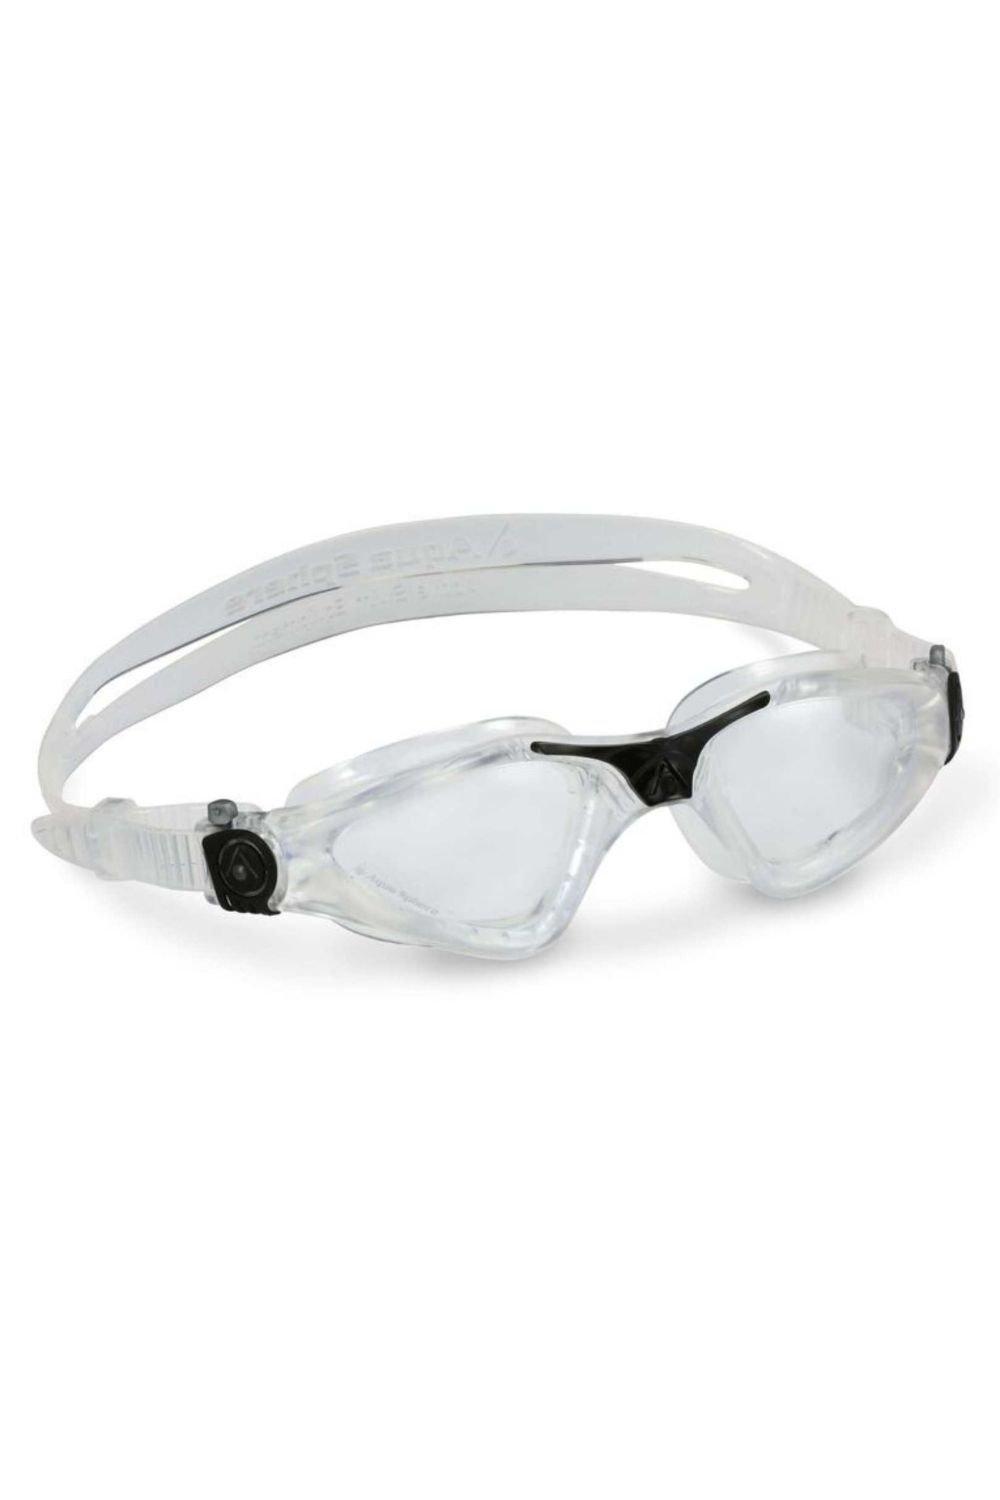 aquasphere очки для плавания kaiman прозрачные линзы light blue green Очки для плавания Kayenne — прозрачные линзы Aquasphere, прозрачный